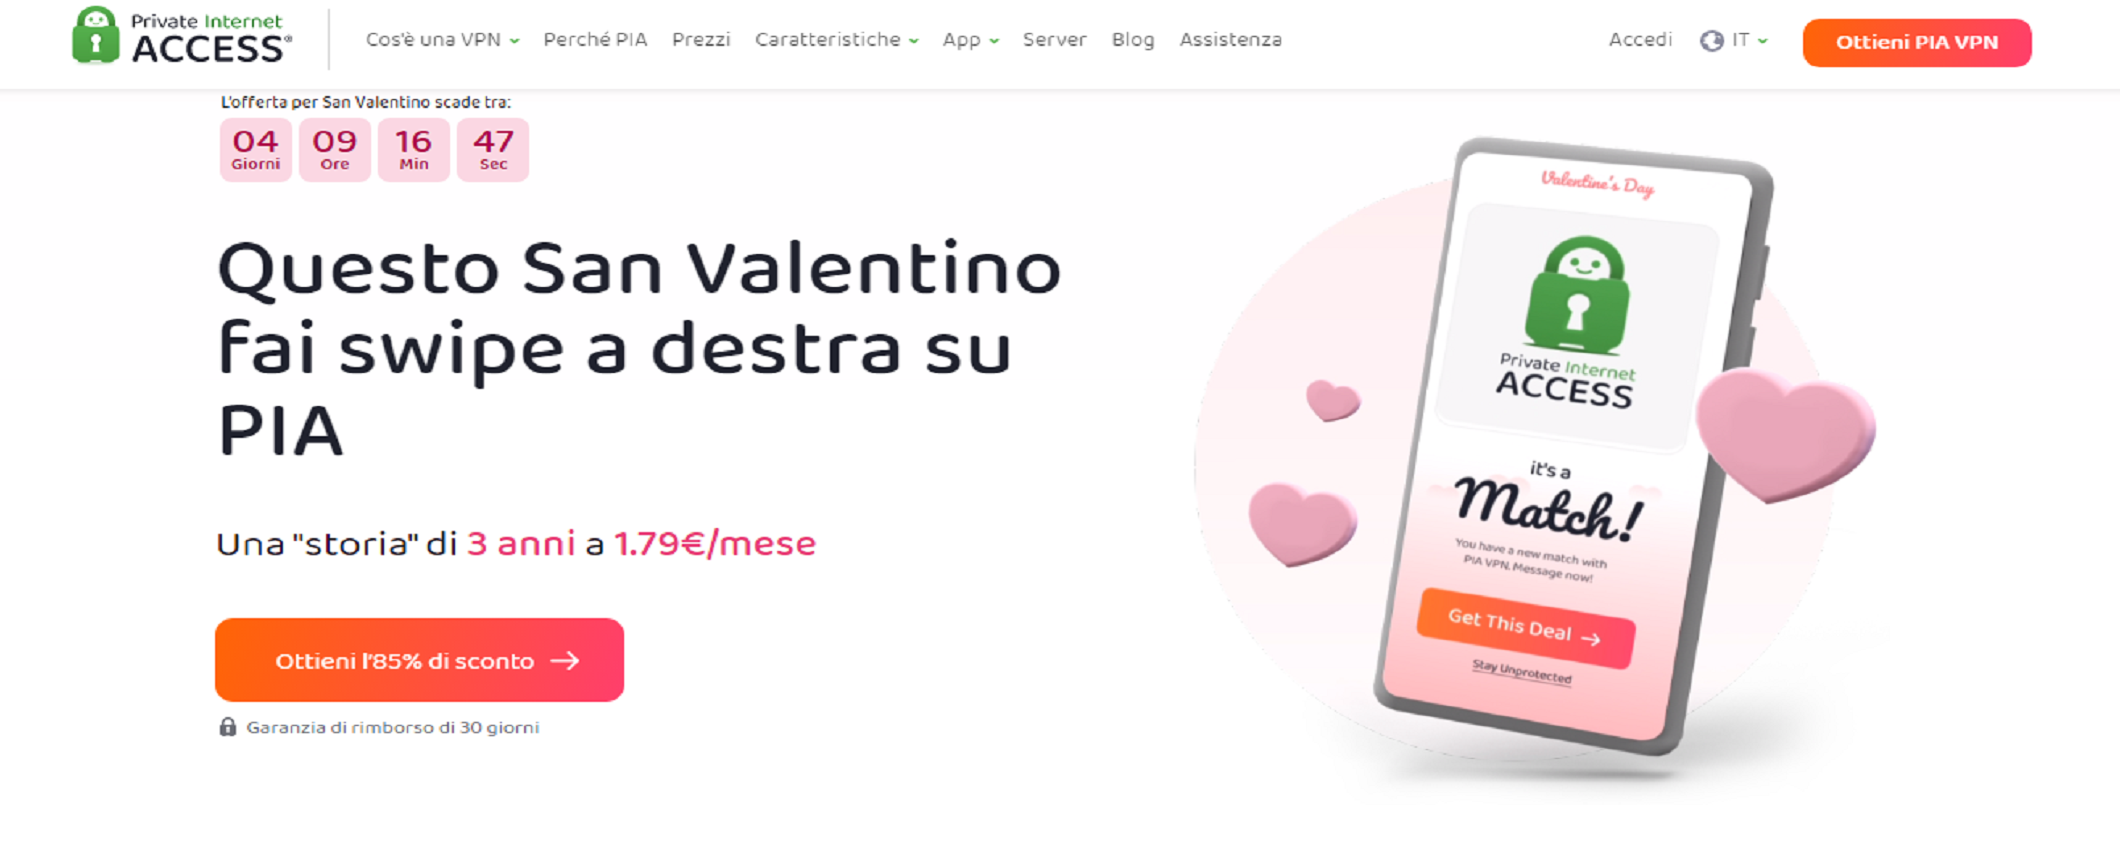 San Valentino: regala Private Internet Access 3+3